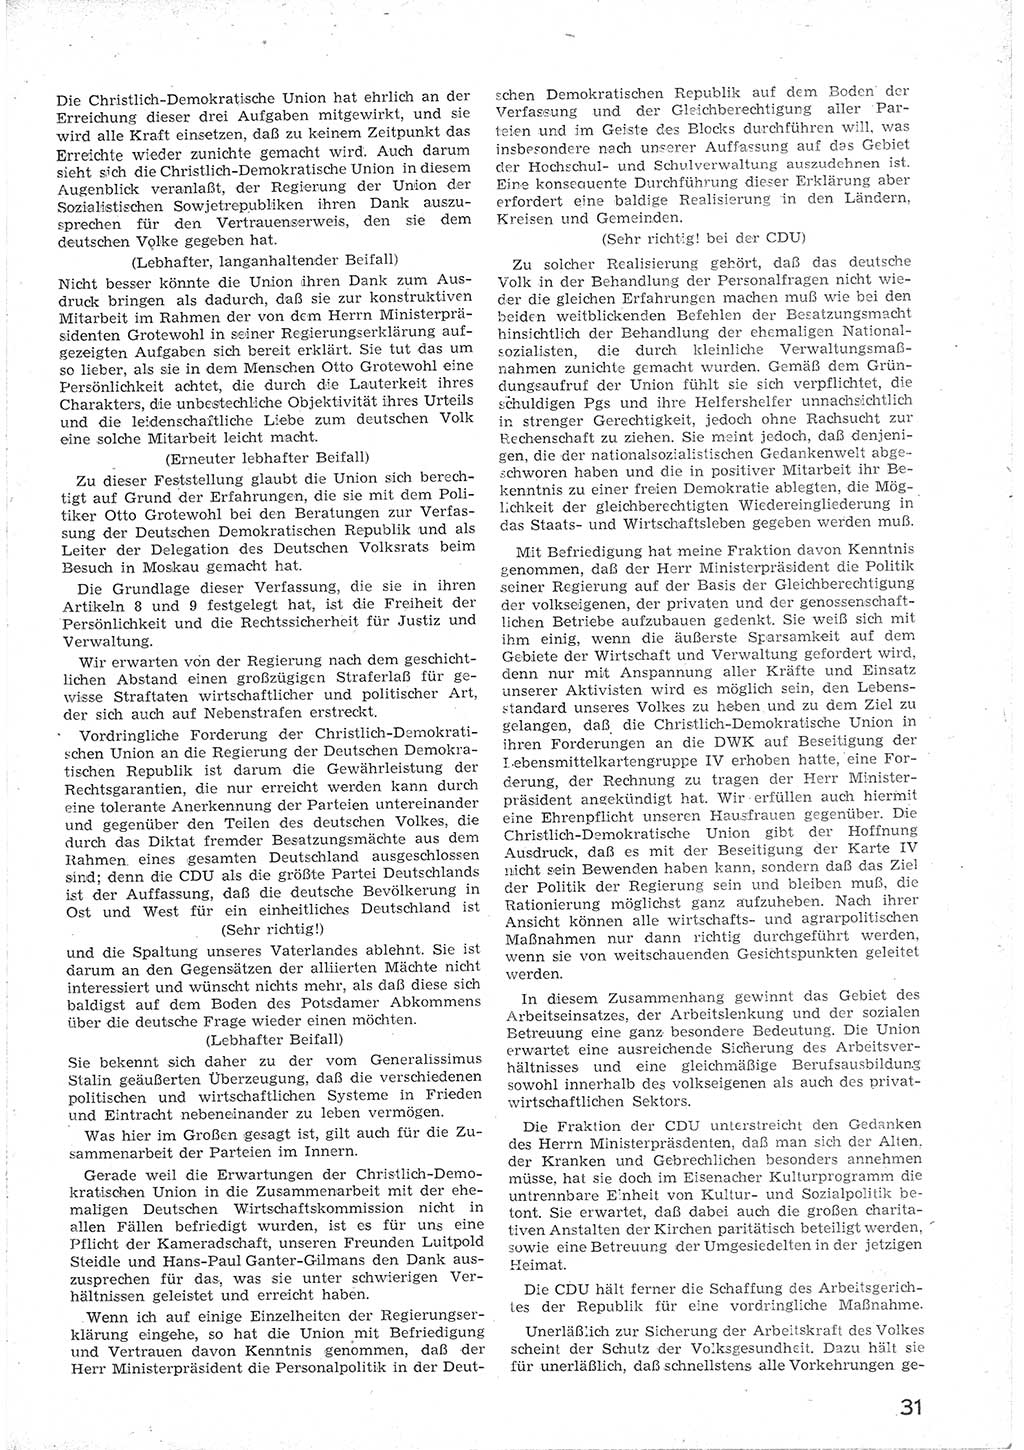 Provisorische Volkskammer (VK) der Deutschen Demokratischen Republik (DDR) 1949-1950, Dokument 43 (Prov. VK DDR 1949-1950, Dok. 43)